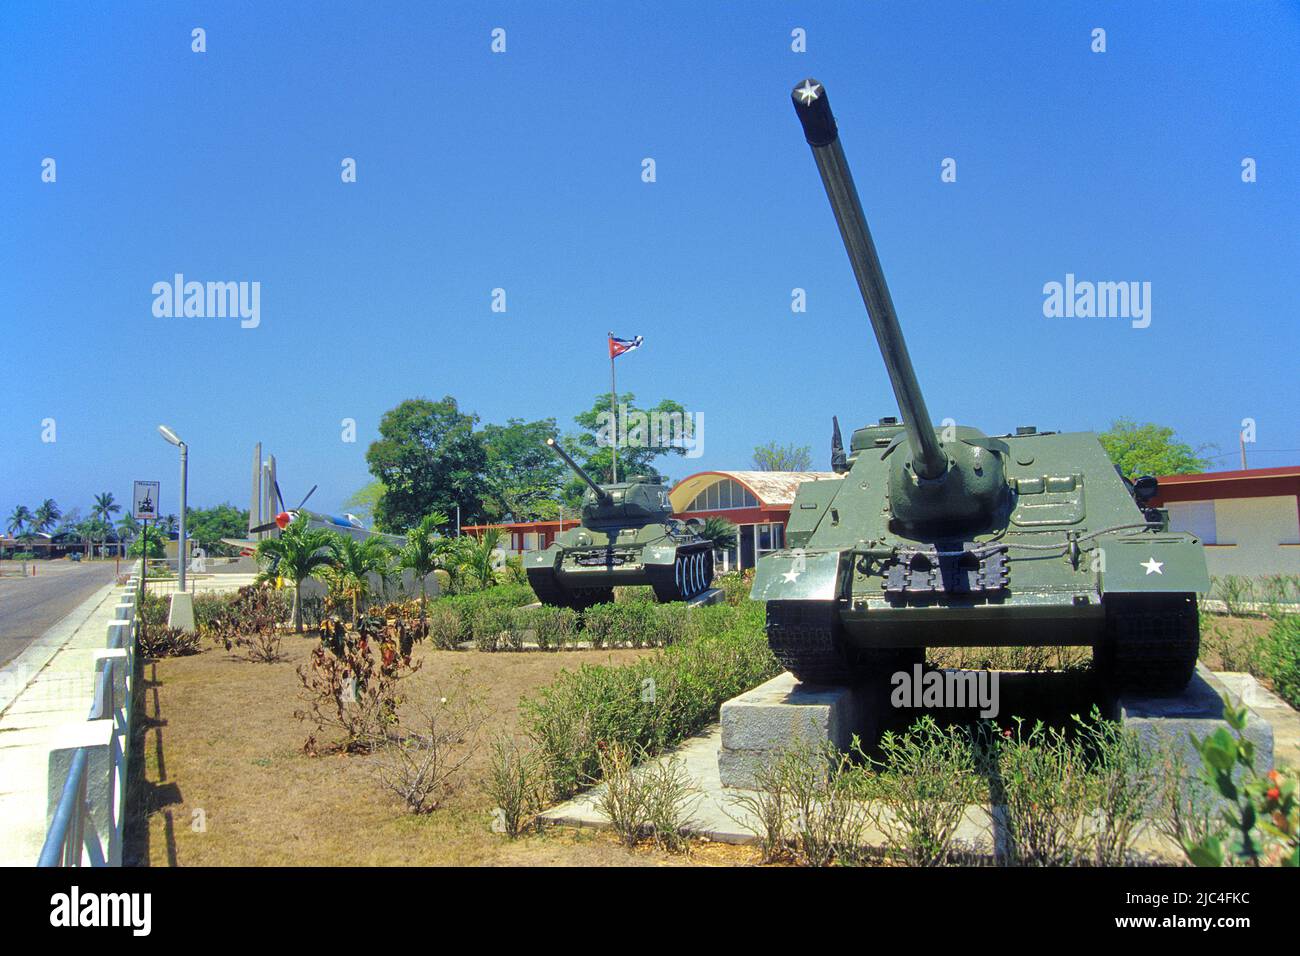 Destroyer de char soviétique SU-100 et char soviétique T-34, mémorial au mseum militaire dans la baie des cochons, Playa Girona, Cuba, Caraïbes Banque D'Images